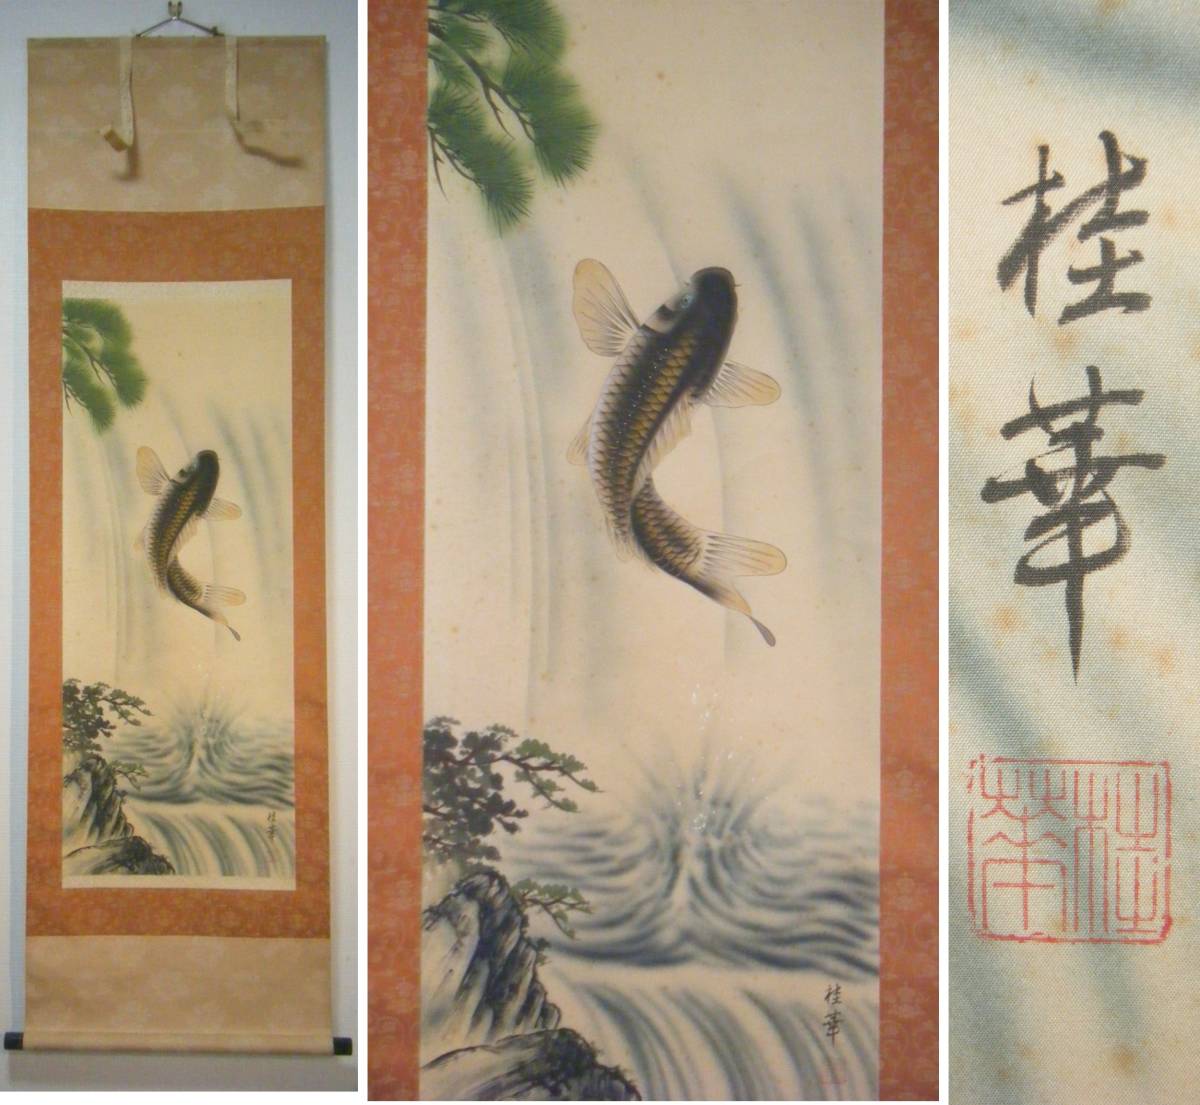 लटकता हुआ स्क्रॉल, कीका शिलालेख, शुभकामनाएँ छलांग लगाने वाला कार्प, कृति, बॉक्सिंग, K115, चित्रकारी, जापानी पेंटिंग, फूल और पक्षी, पक्षी और जानवर